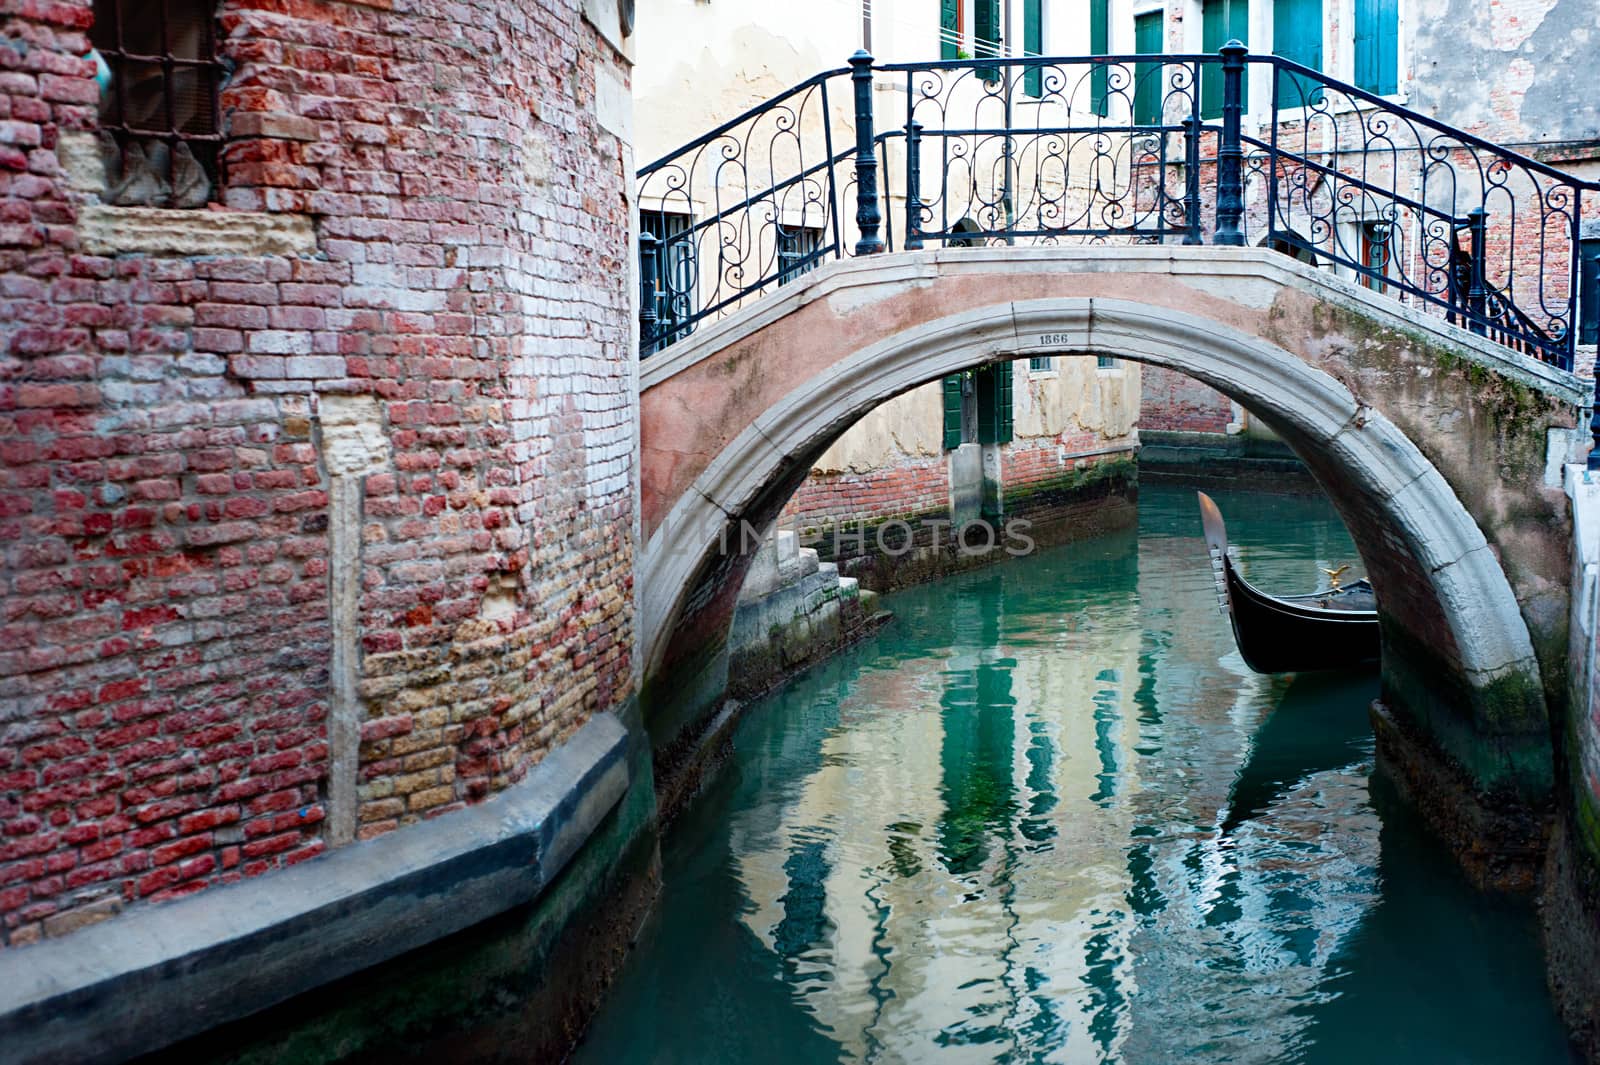 Venice street by joyfull